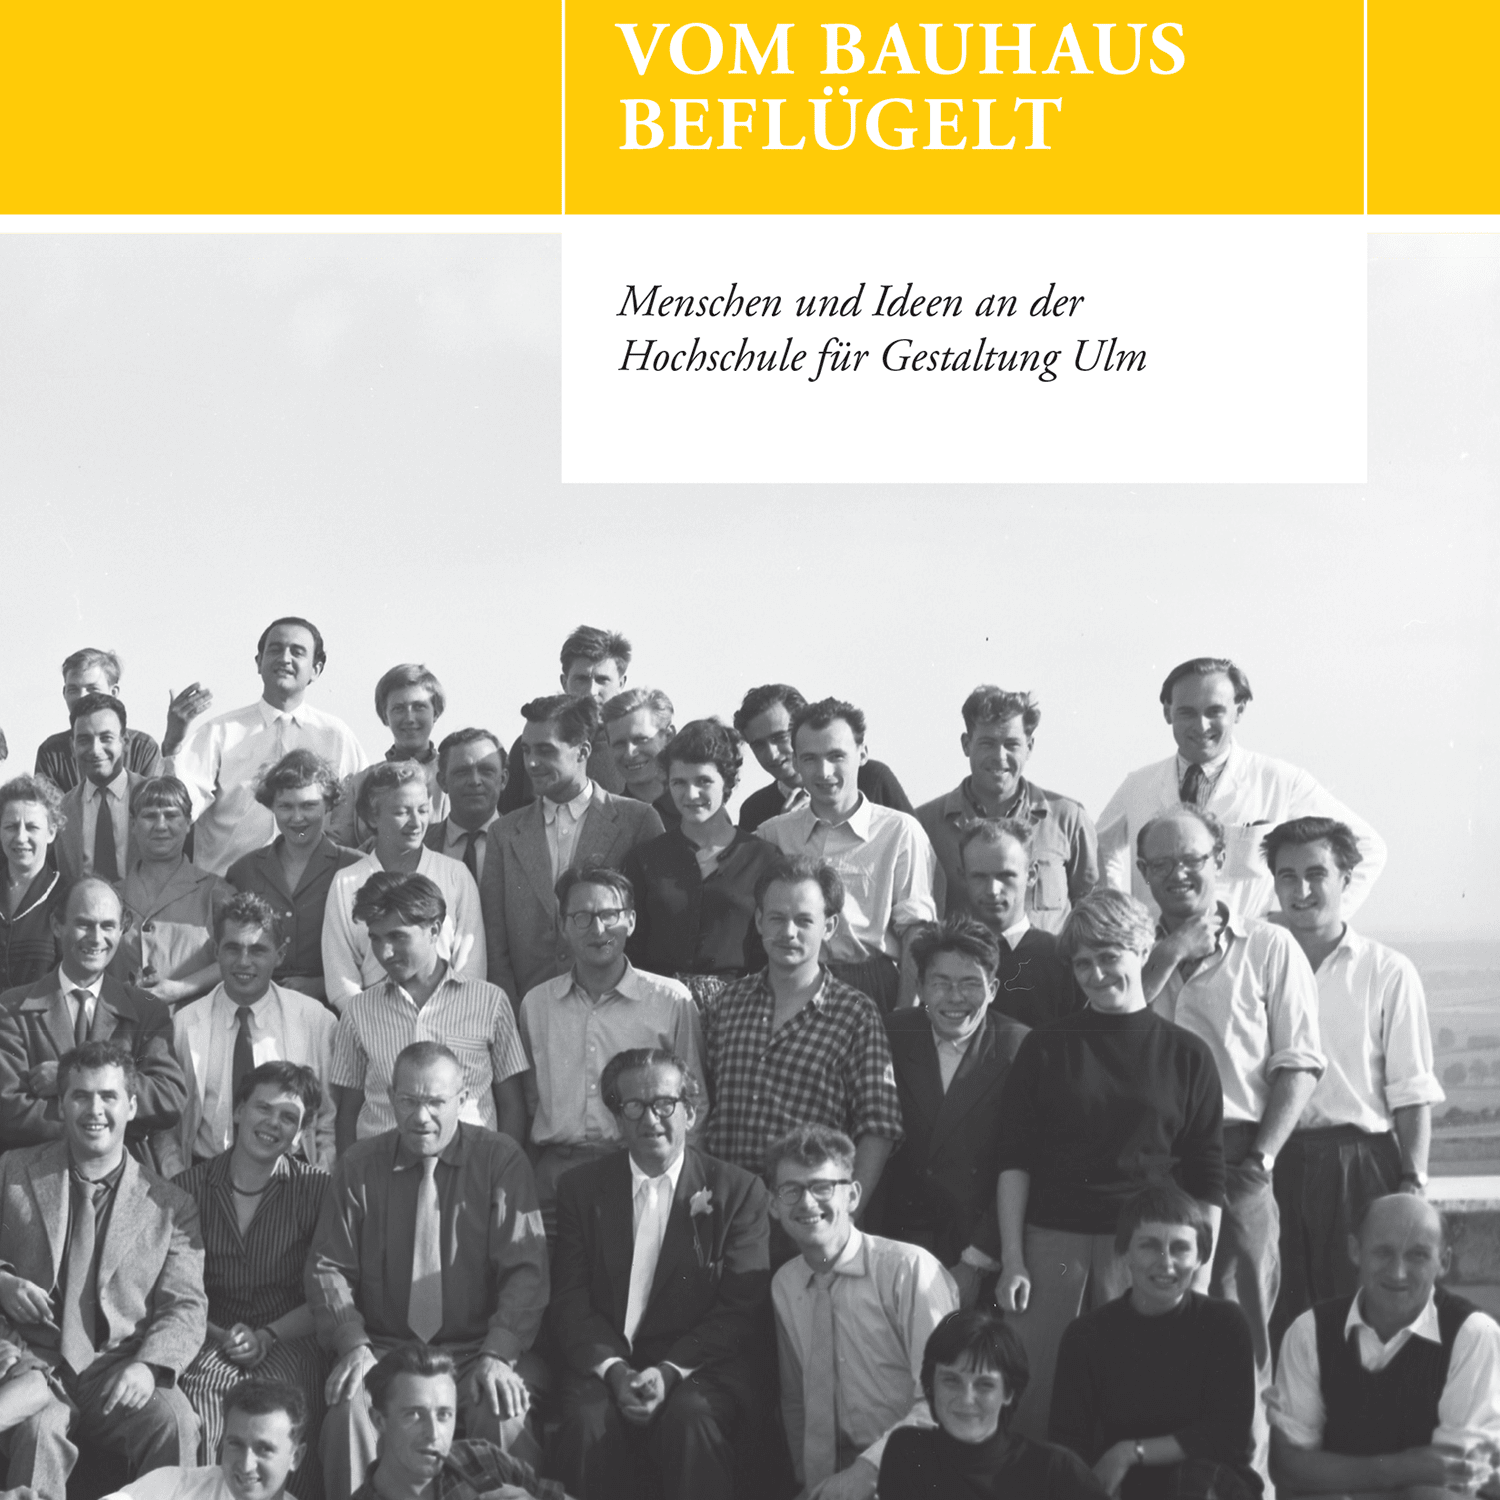 Vom Bauhaus beflügelt的图片
